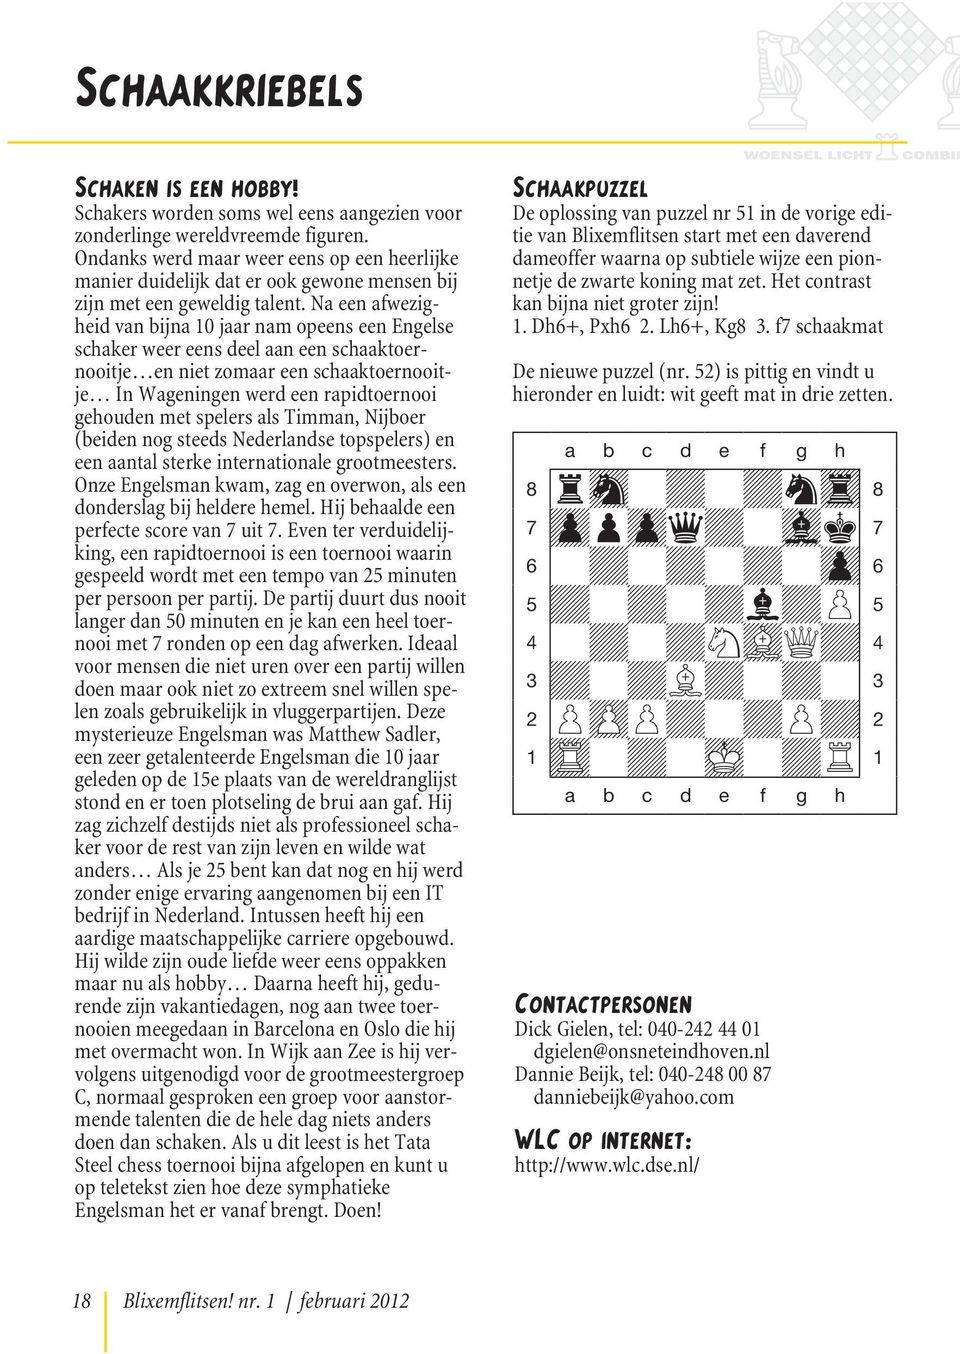 Na een afwezigheid van bijna 10 jaar nam opeens een Engelse schaker weer eens deel aan een schaaktoernooitje en niet zomaar een schaaktoernooitje In Wageningen werd een rapidtoernooi gehouden met